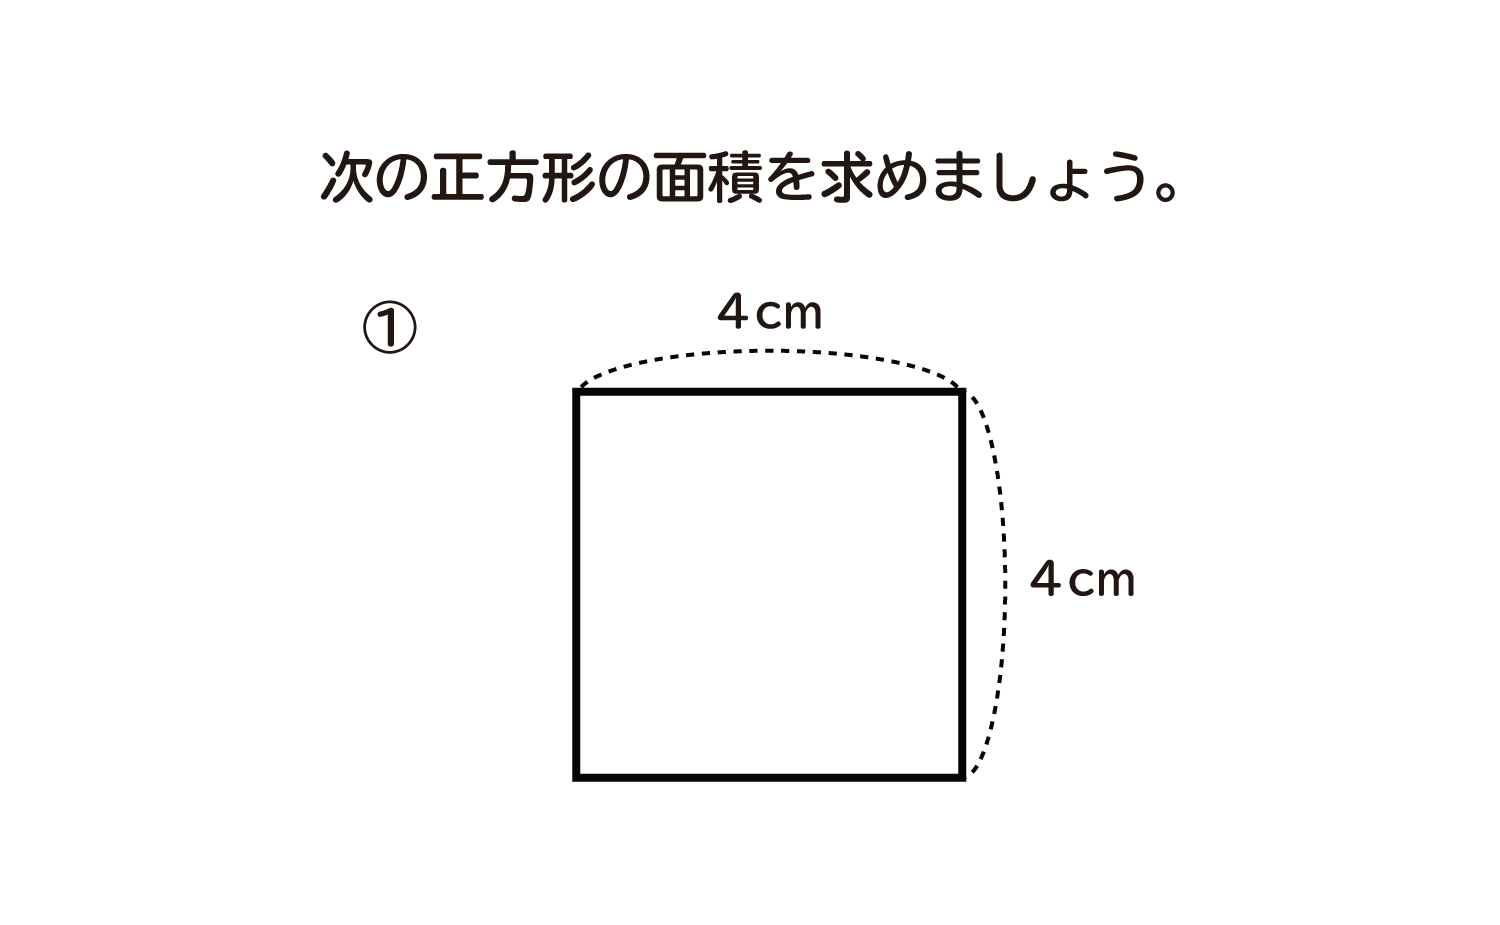 長方形や正方形の面積の単位